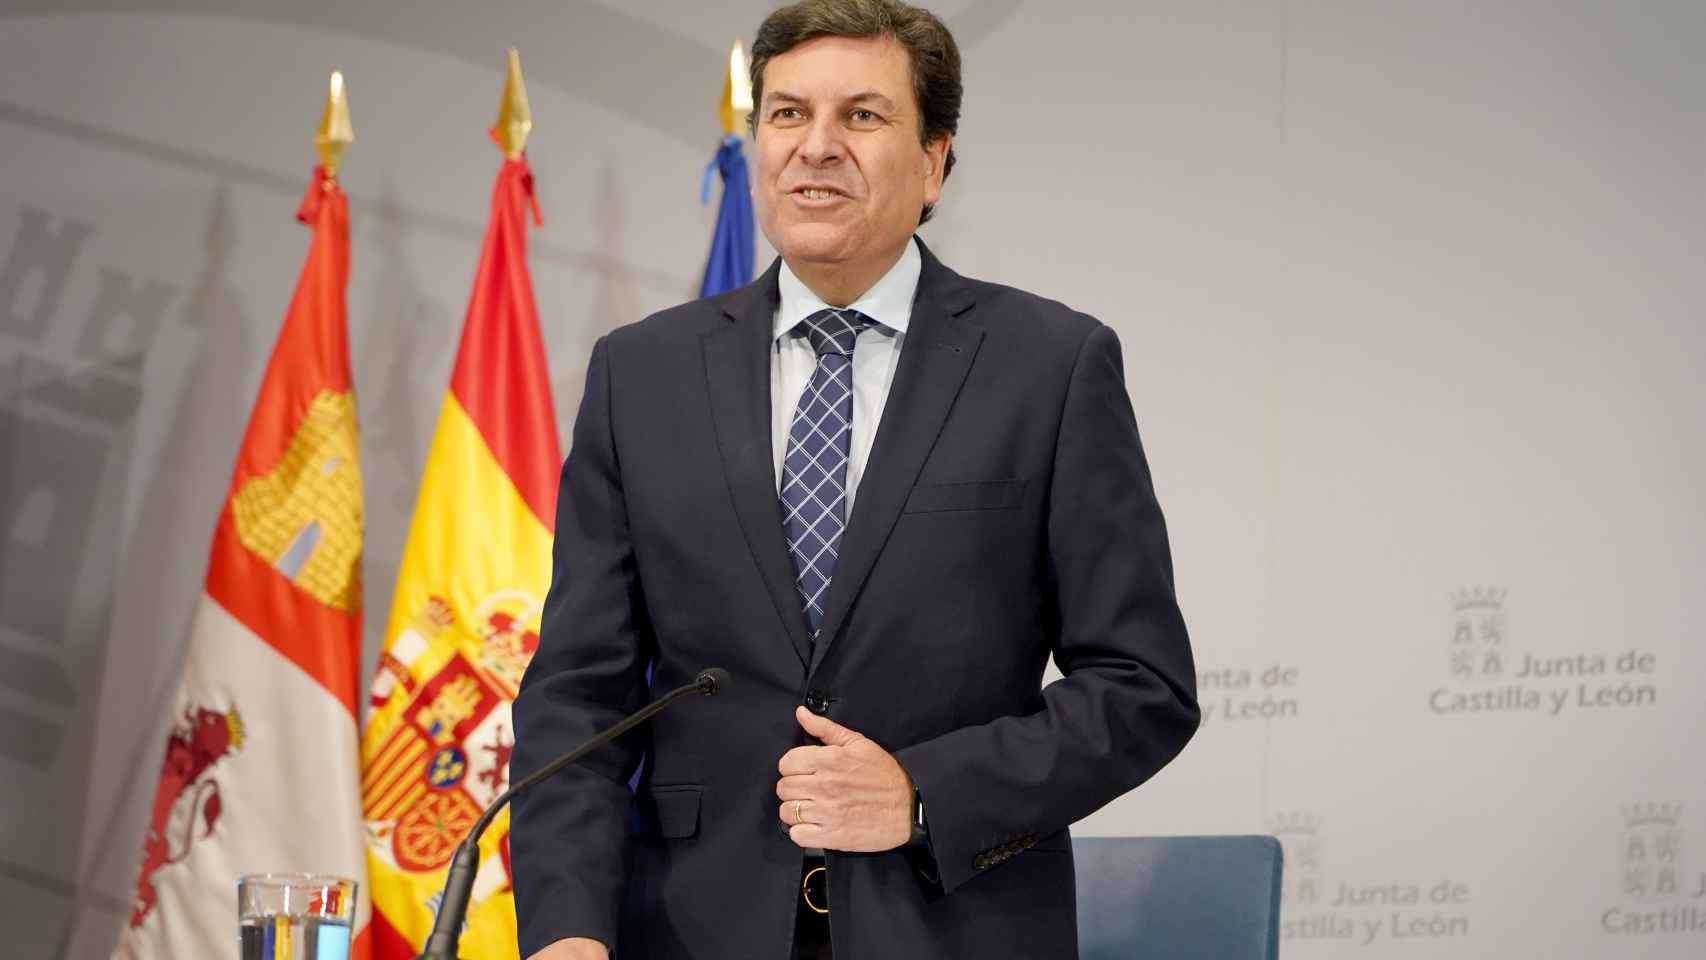 El consejero de Economía y Hacienda, Carlos Fernández Carriedo, tras el Consejo de Gobierno celebrado hoy